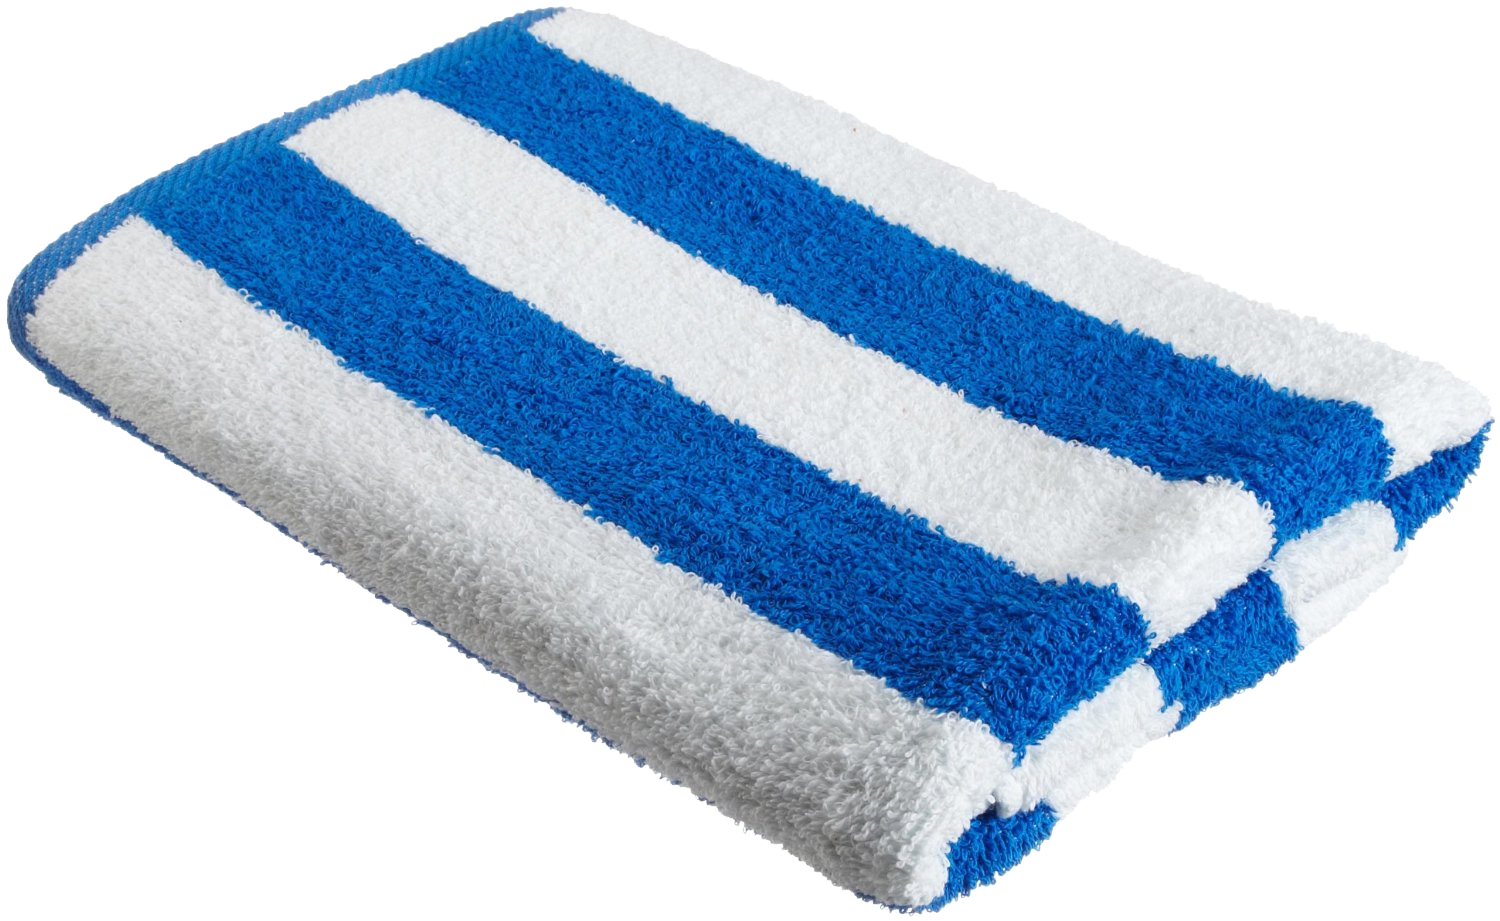 Asciugamano